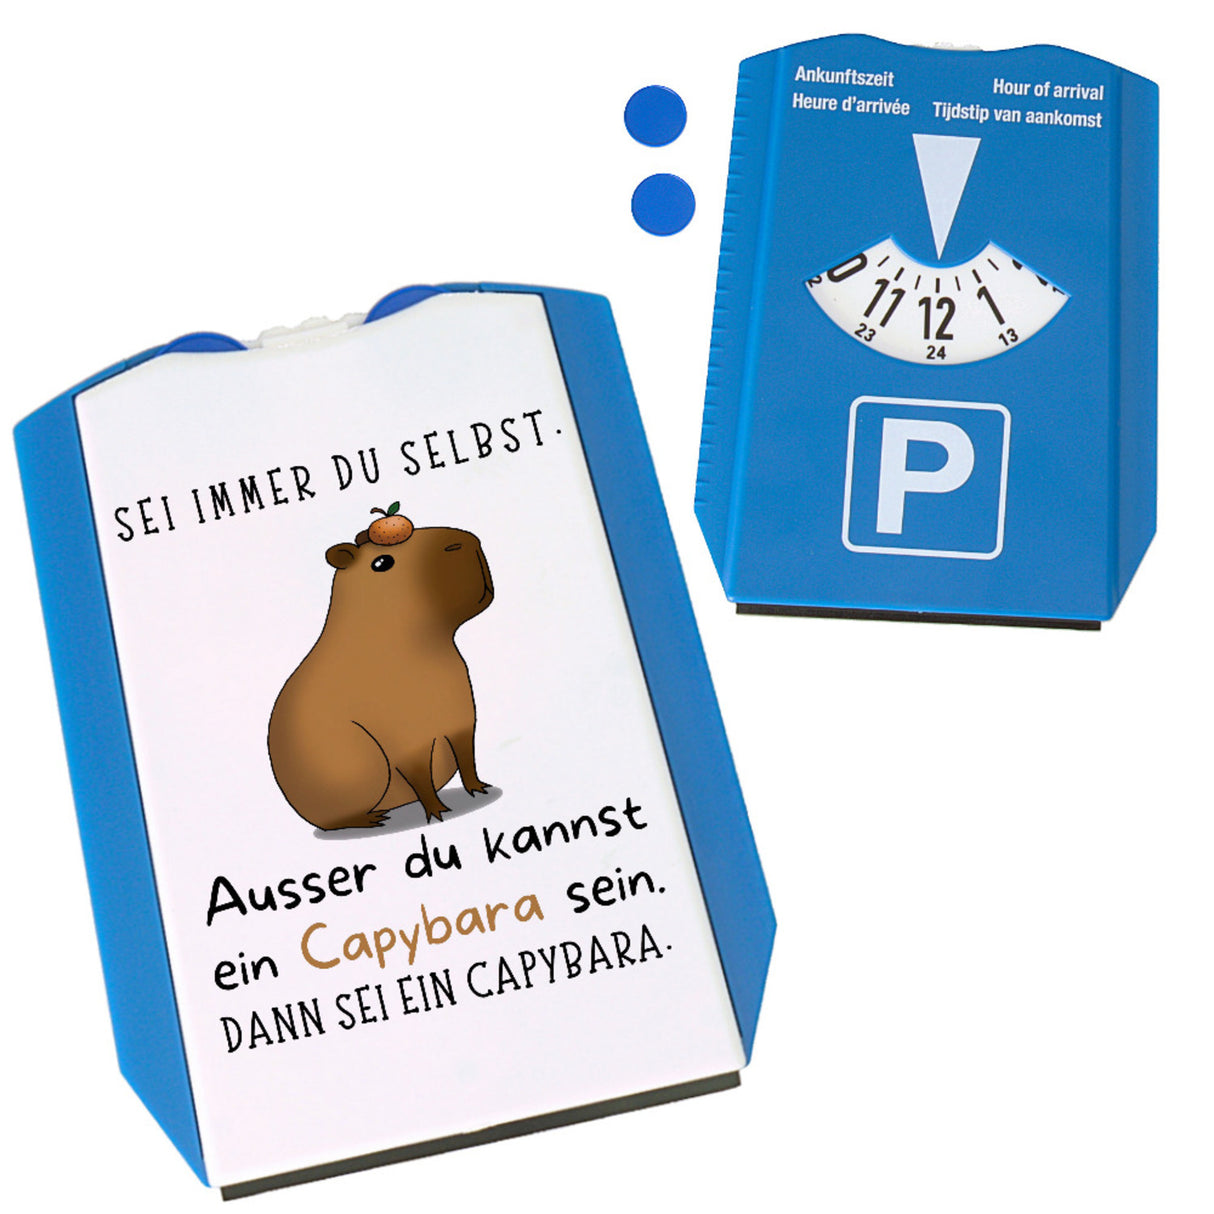 Parkscheibe Sei immer du selbst - ausser du kannst ein Capybara